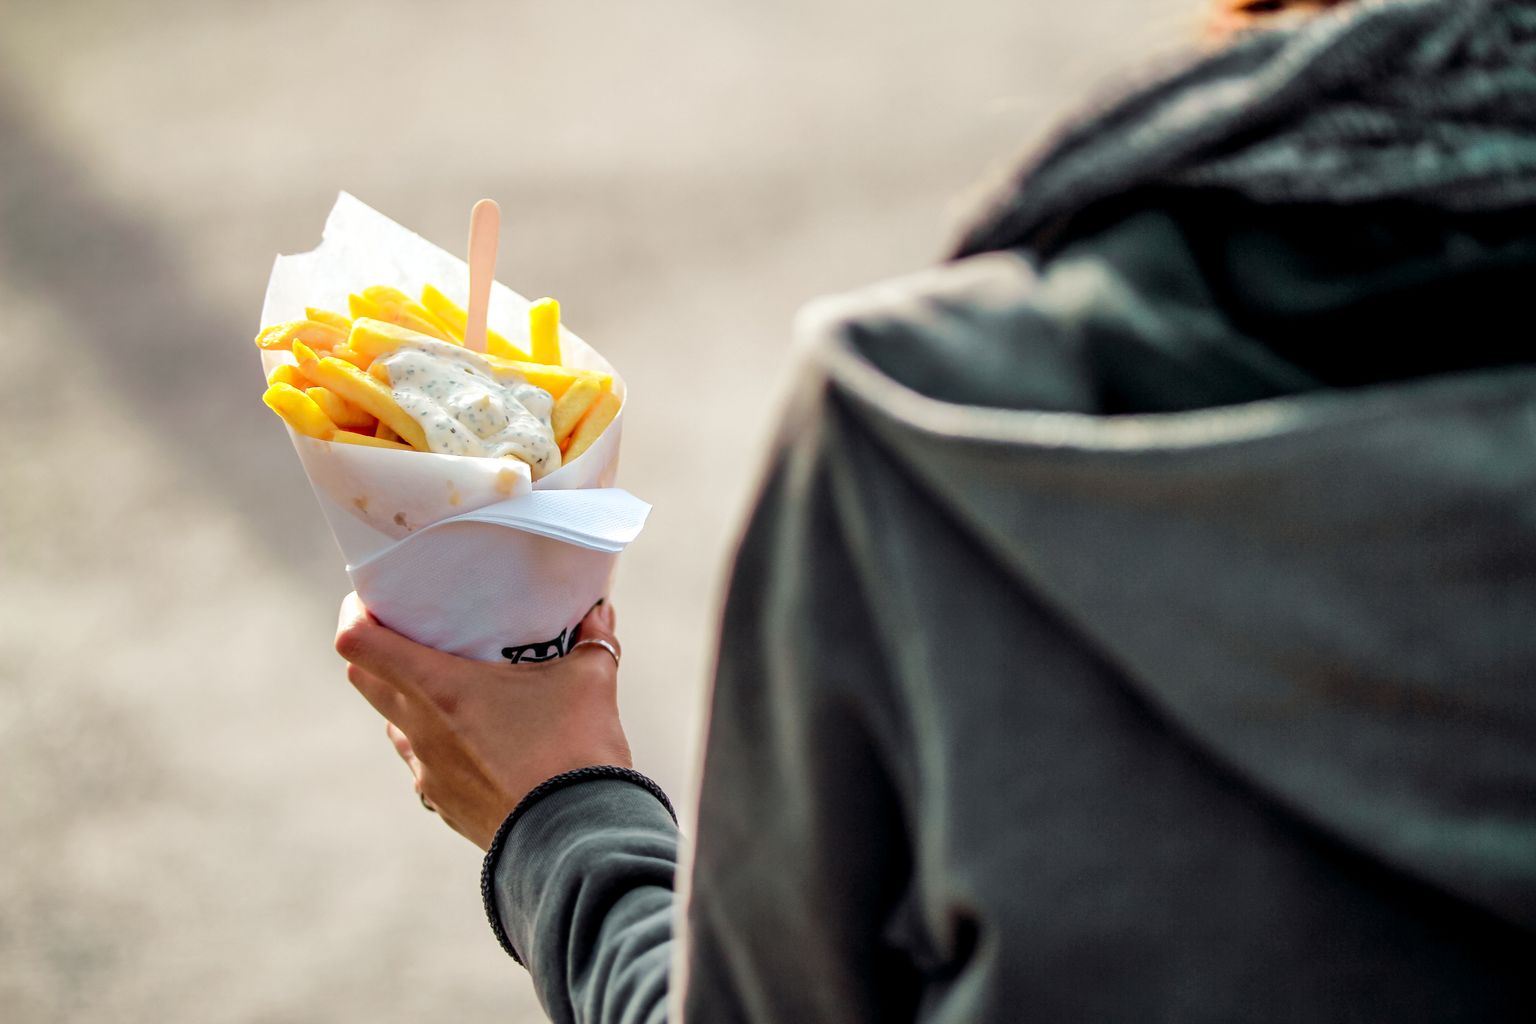 Inimene hoidmas Belgias Brüsselis tuutut friikartulite ja majoneesiga. Pilt on illustreeriv